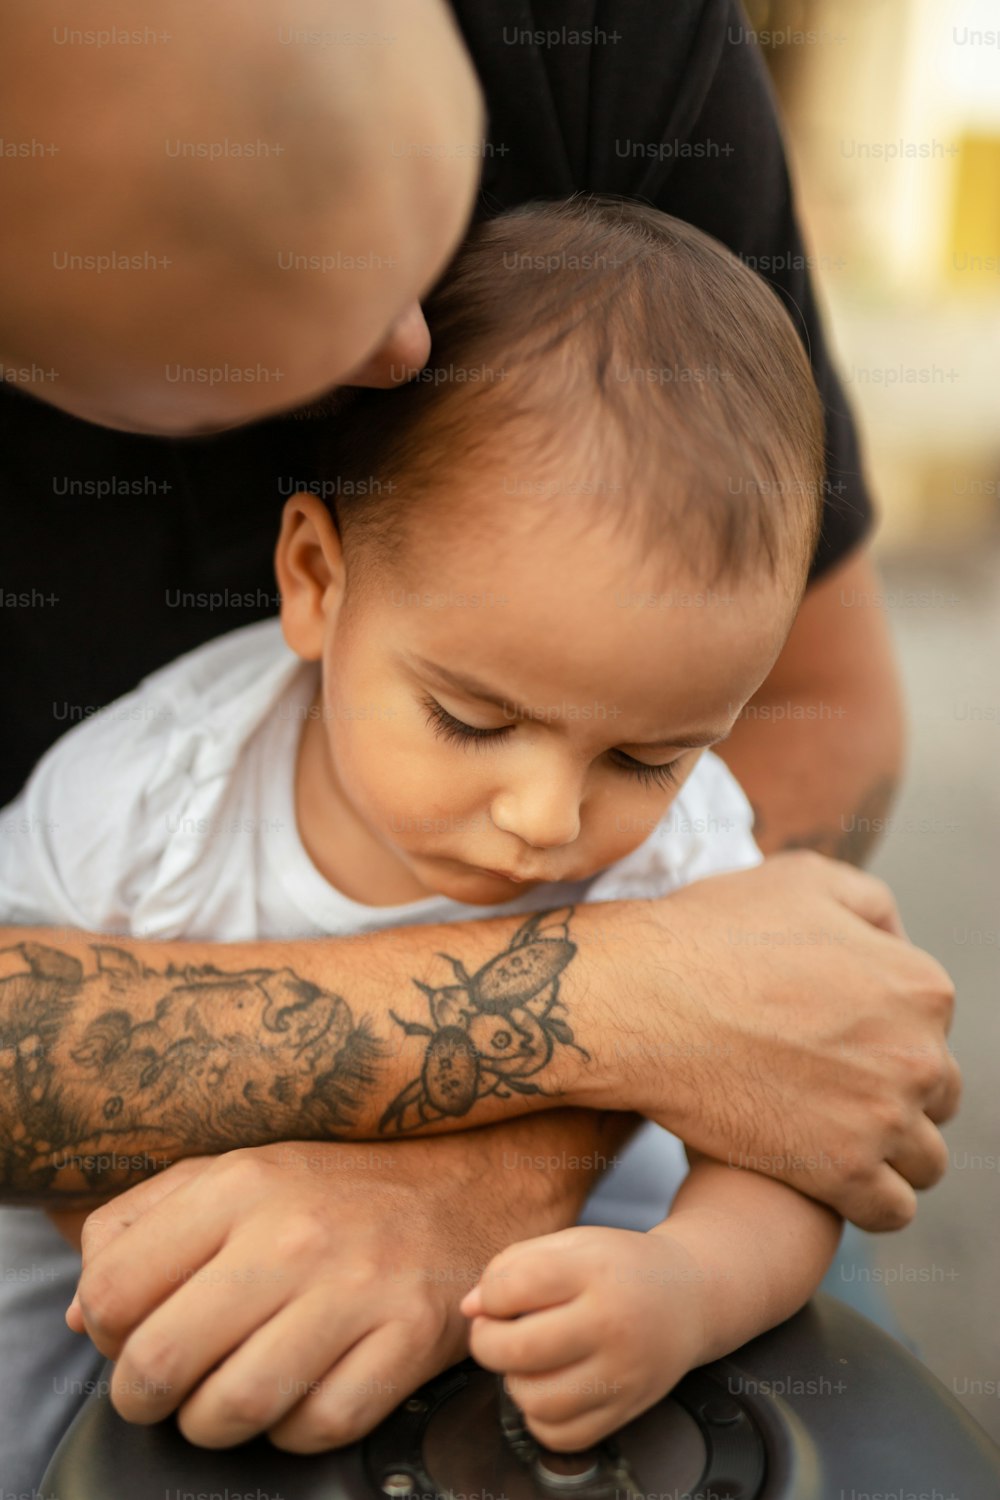 Un uomo che tiene un bambino con un tatuaggio sul braccio